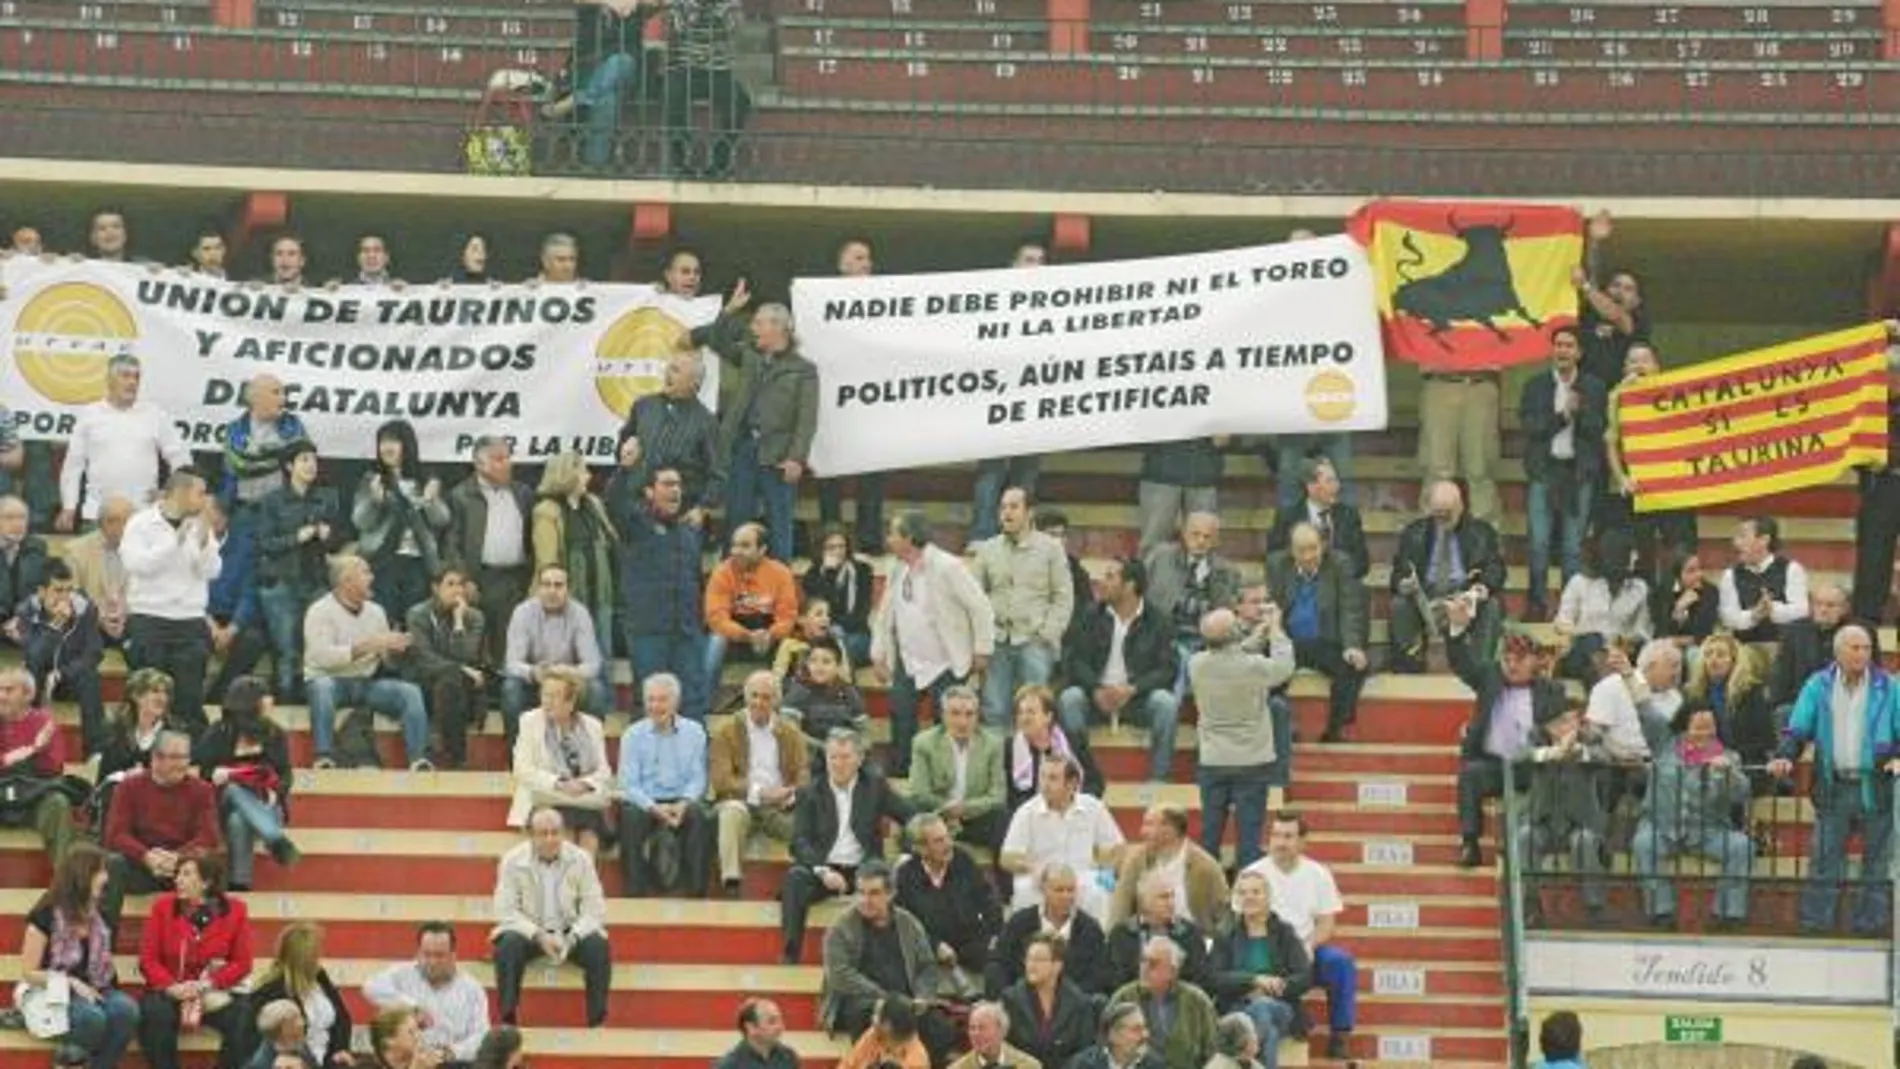 Los aficionados catalanes reivindicaron ayer en el tendido de La Misericordia su derecho a ver toros